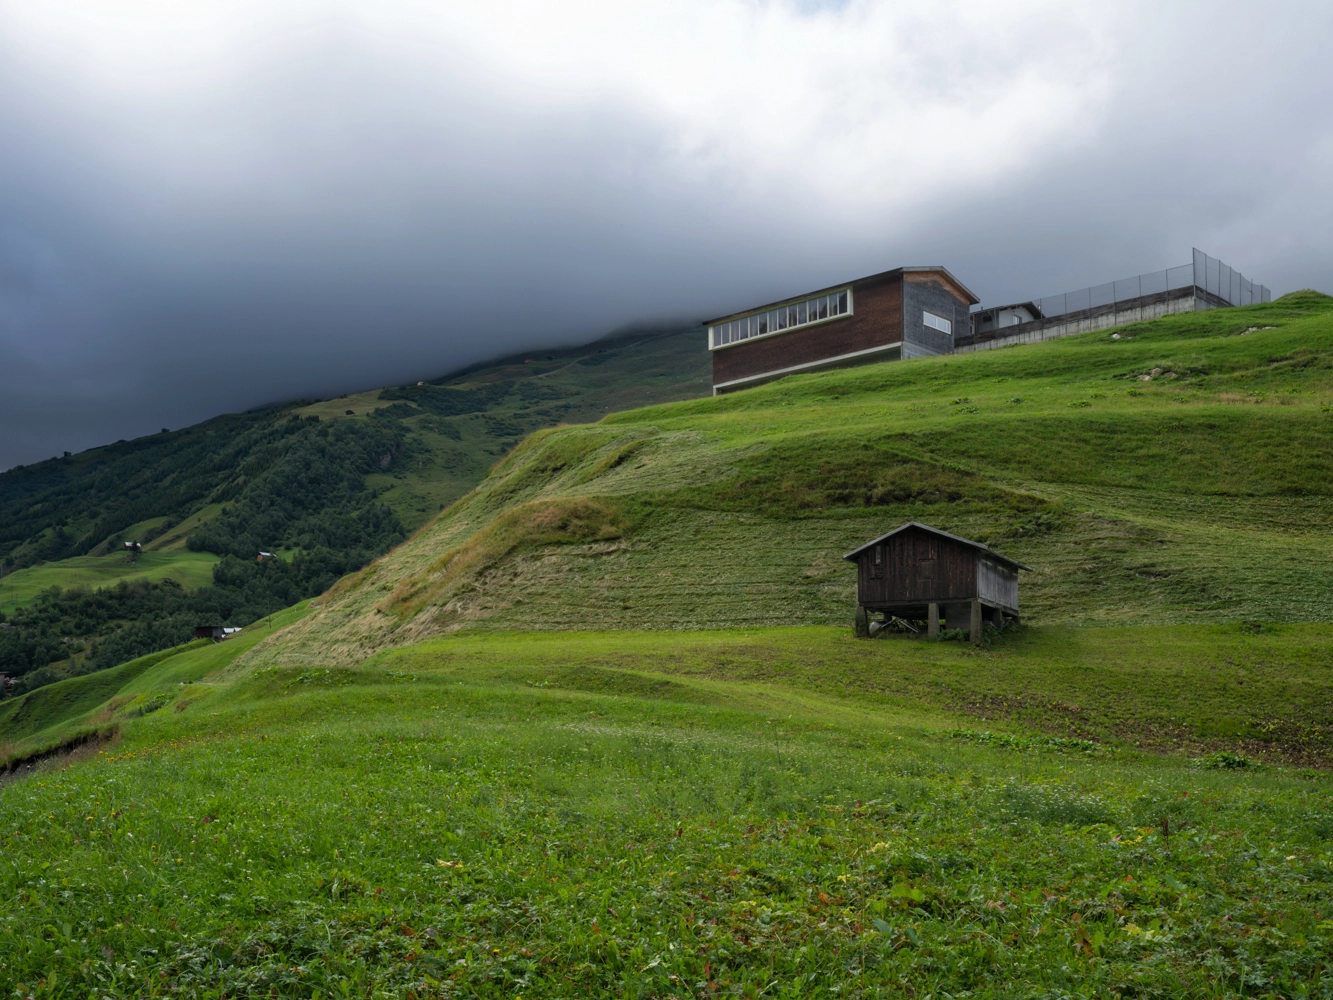 Pabellón de usos múltiples en Vrin, Suiza  |  Gion Caminada, arquitecto